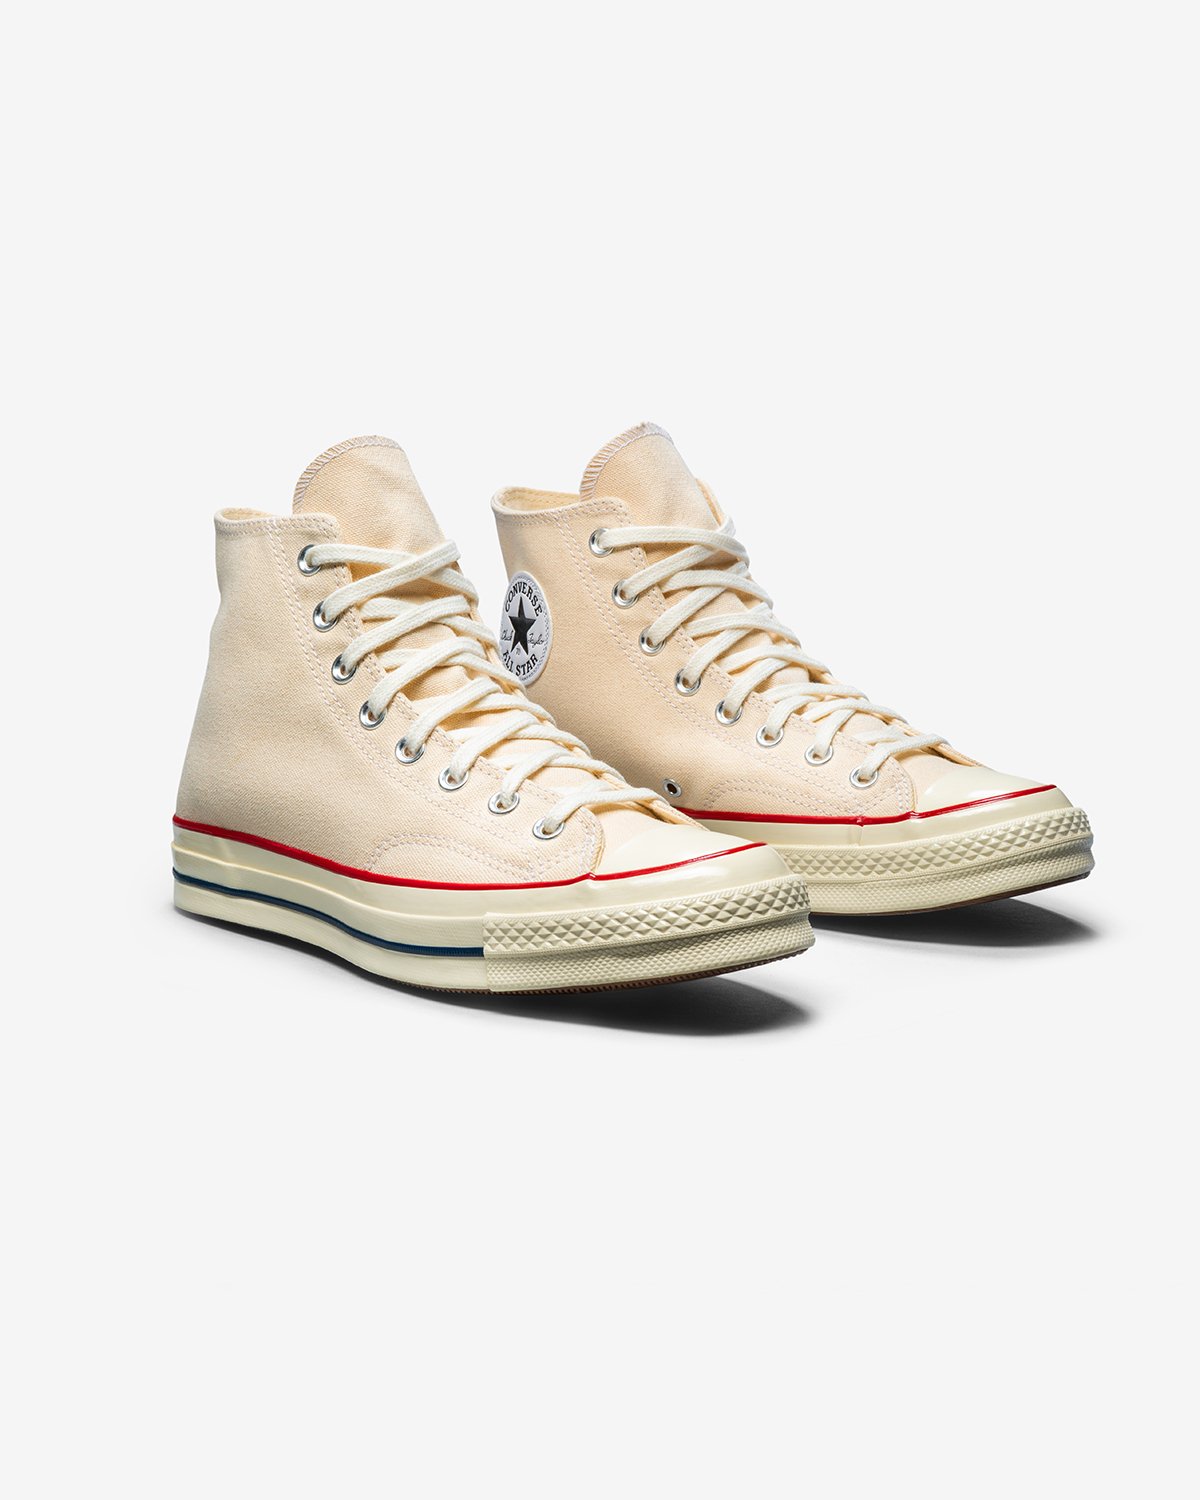 Converse - Chuck 70 Hi Parchment/Garnet/Egret - Footwear - White - Image 3